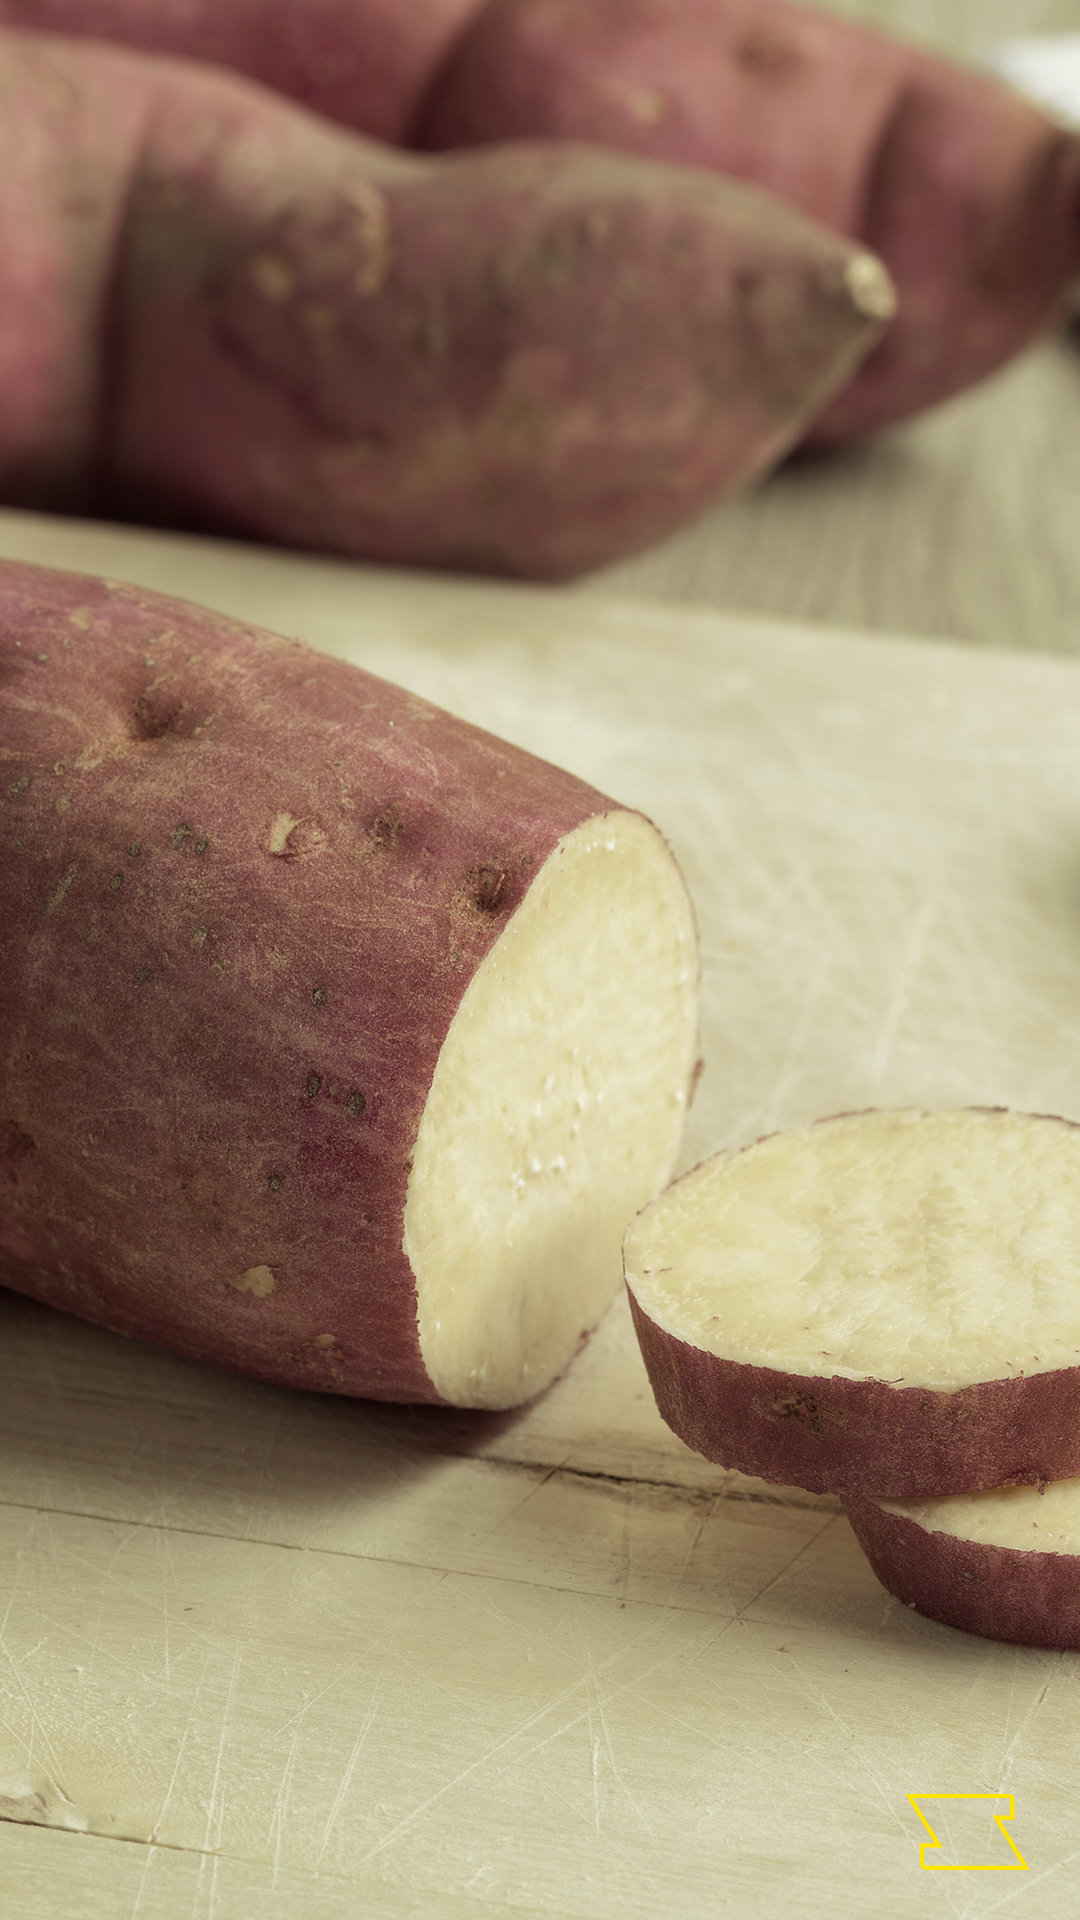 Afinal, comer batata doce engorda ou emagrece?